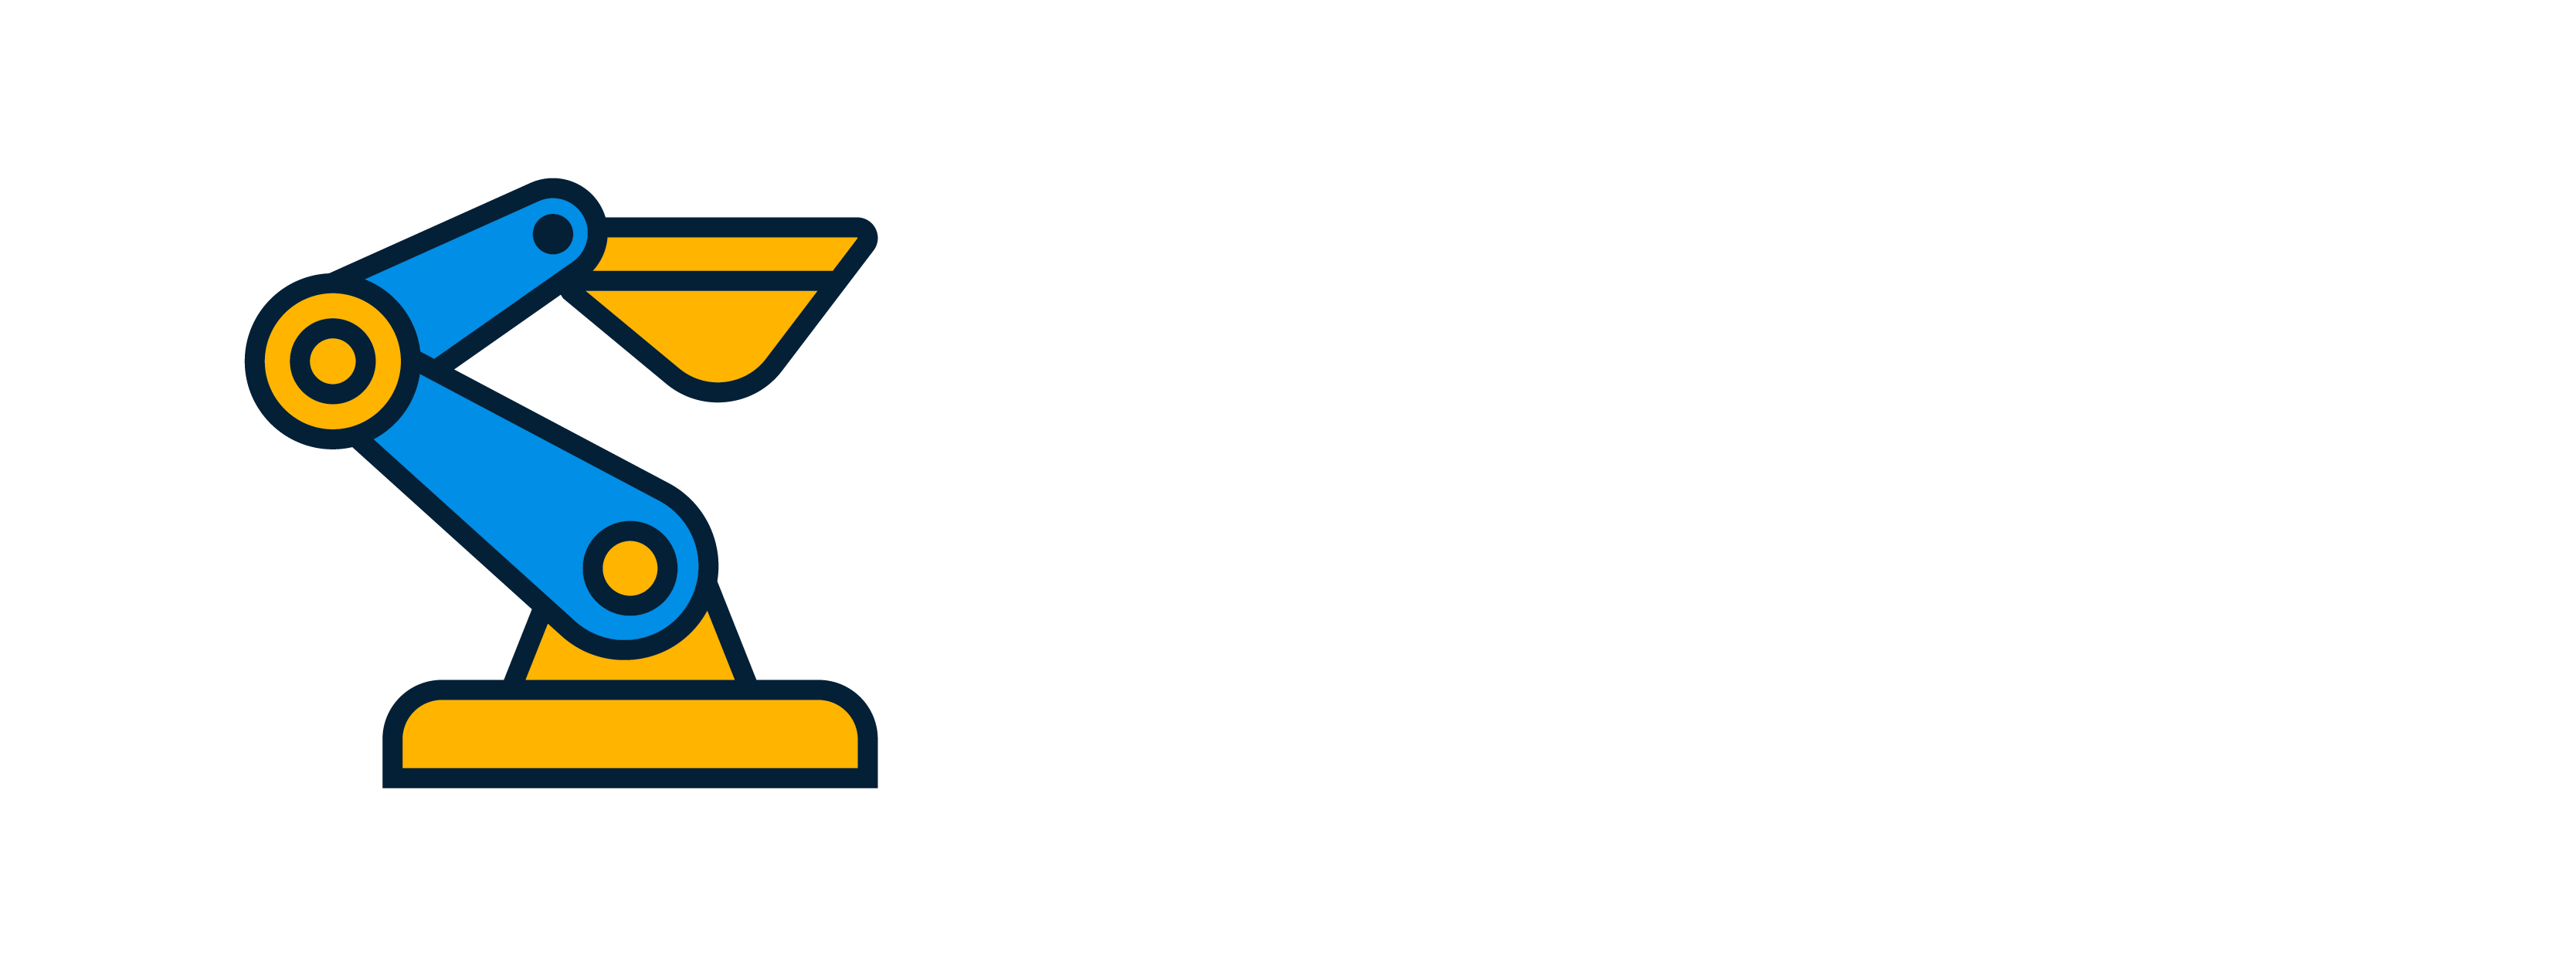 Pelican Robotics